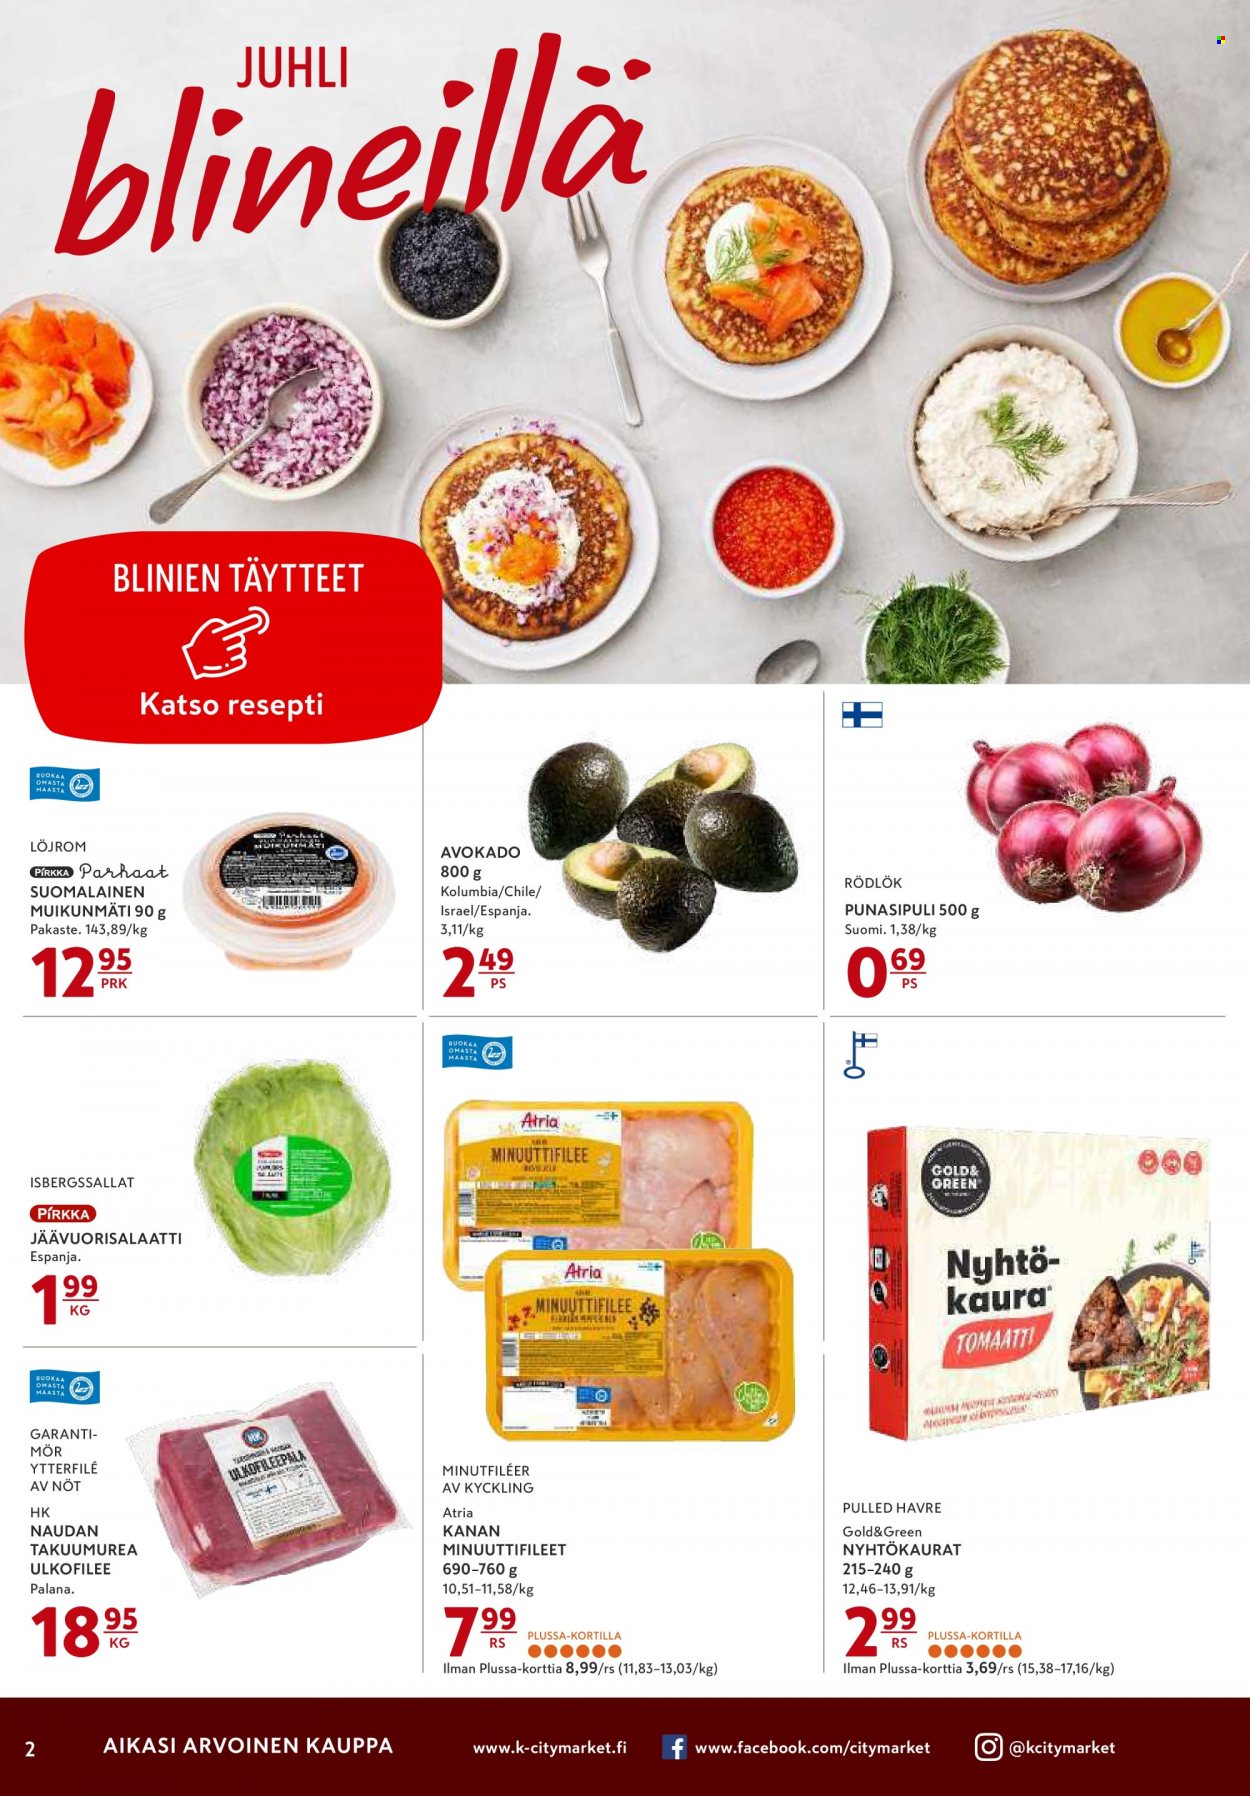 thumbnail - K-citymarket tarjoukset  - 29.12.2021 - 02.01.2022 - Tarjoustuotteet - avokado, jäävuorisalaatti, tomaatti, kanan, naudan, ulkofilee, Atria. Sivu 2.